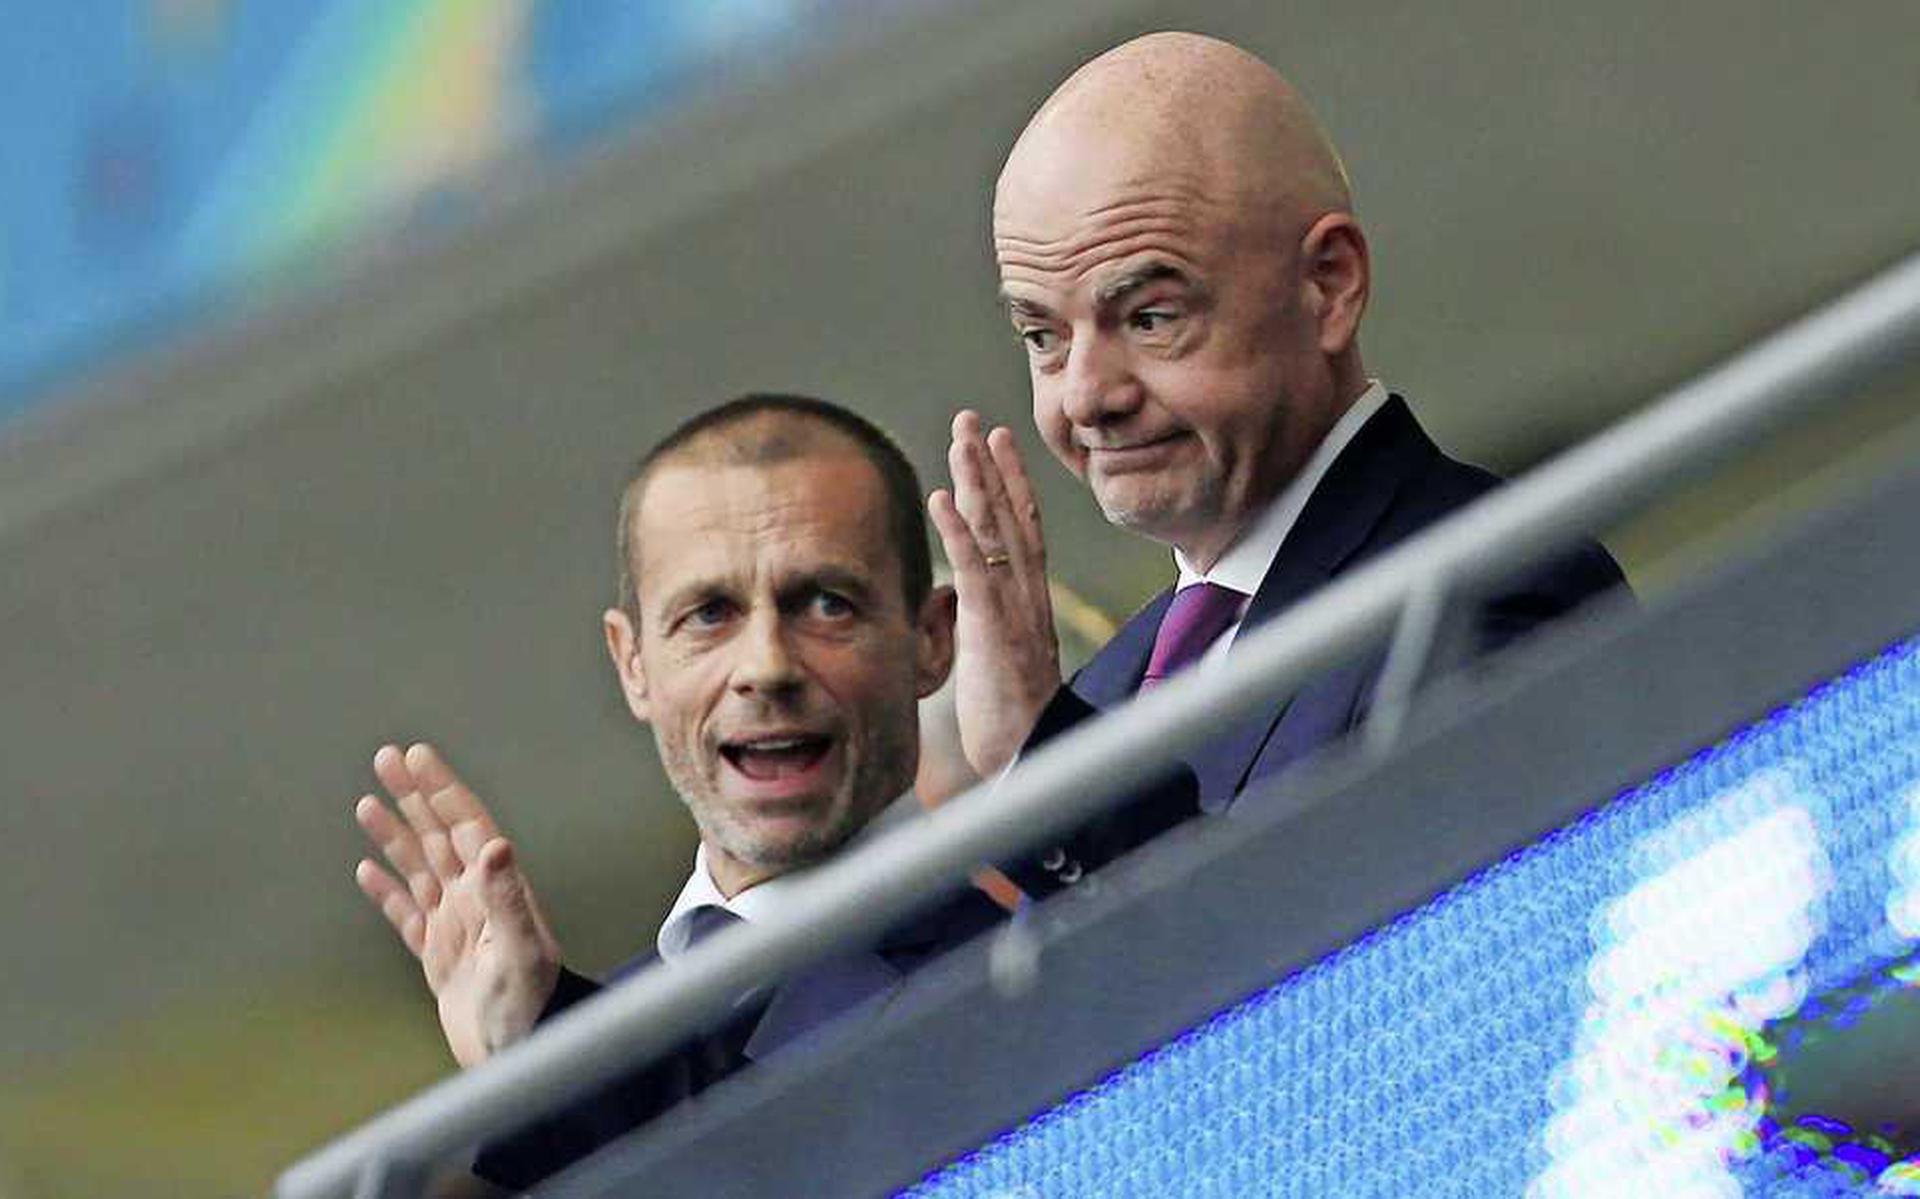 UEFA-president Aleksander Ceferin en FIFA-president Gianni Infantino (r.) op de tribune. Het duo doet er alles om zijn macht te behouden.